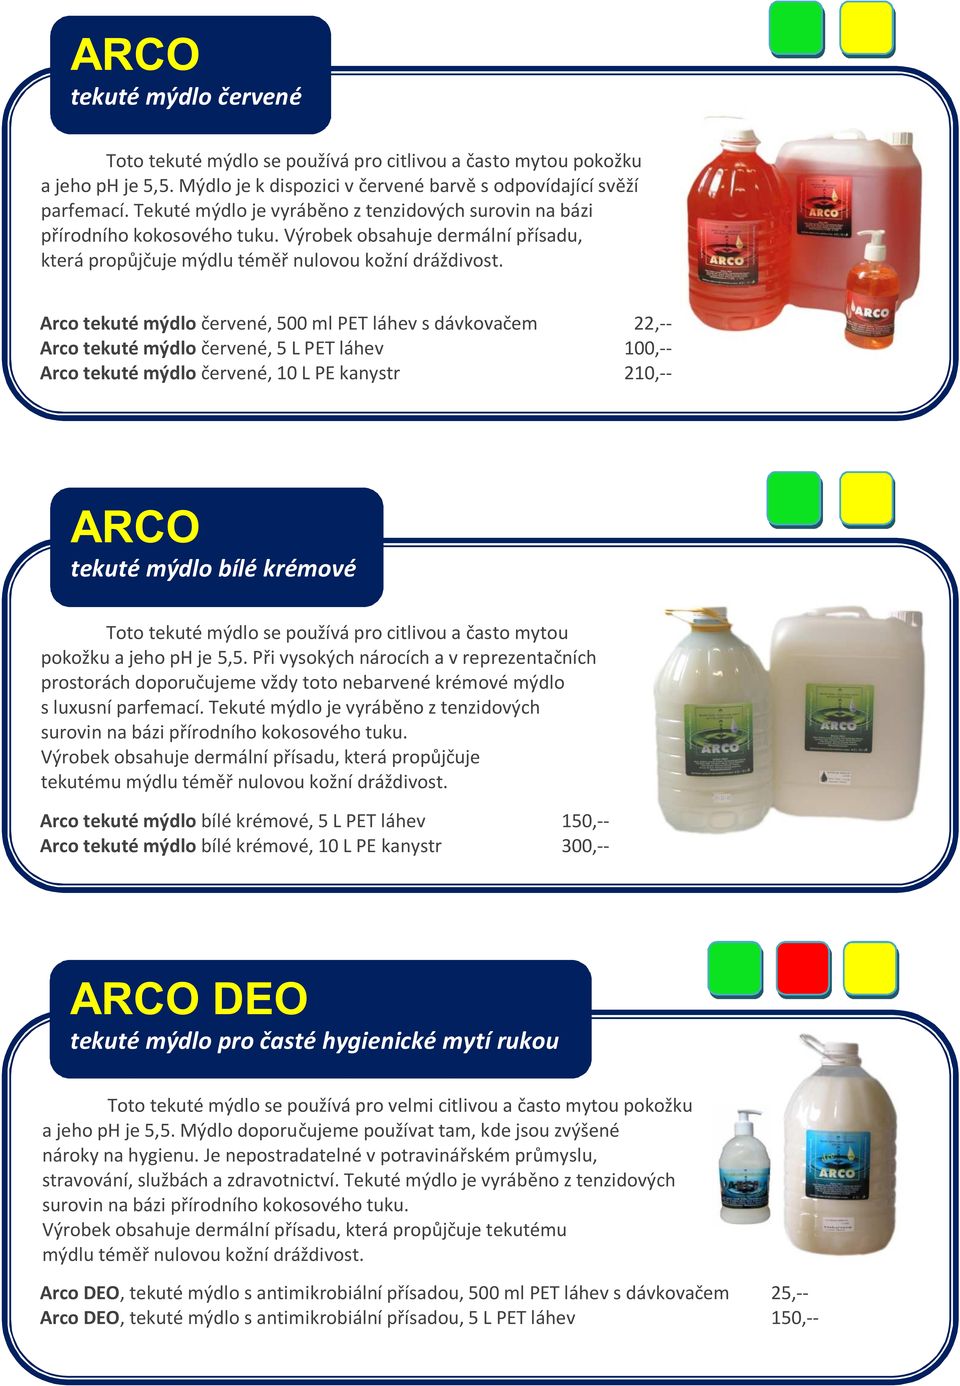 Arco tekuté mýdlo červené, 500 ml PET láhev s dávkovačem 22,-- Arco tekuté mýdlo červené, 5 L PET láhev 100,-- Arco tekuté mýdlo červené, 10 L PE kanystr 210,-- ARCO tekuté mýdlo bílé krémové Toto